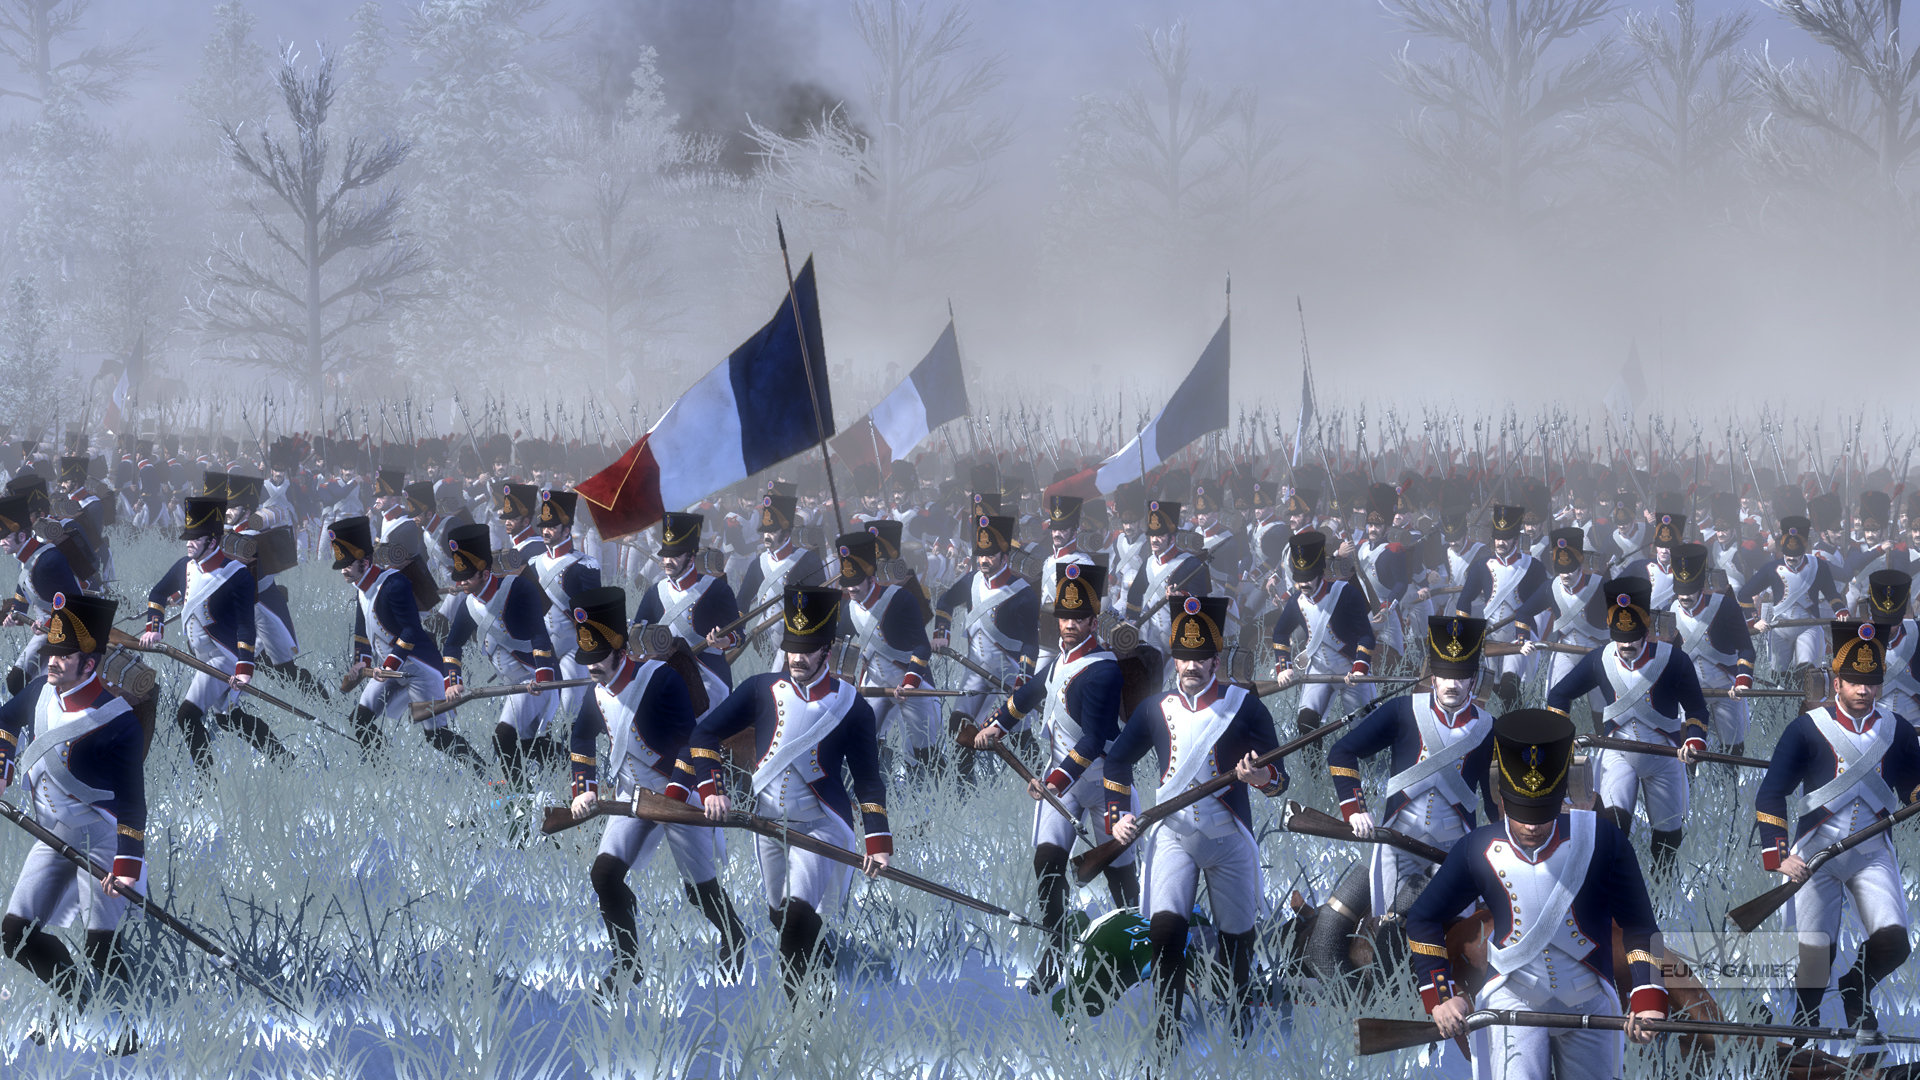 Napoleon: Total War Wallpapers